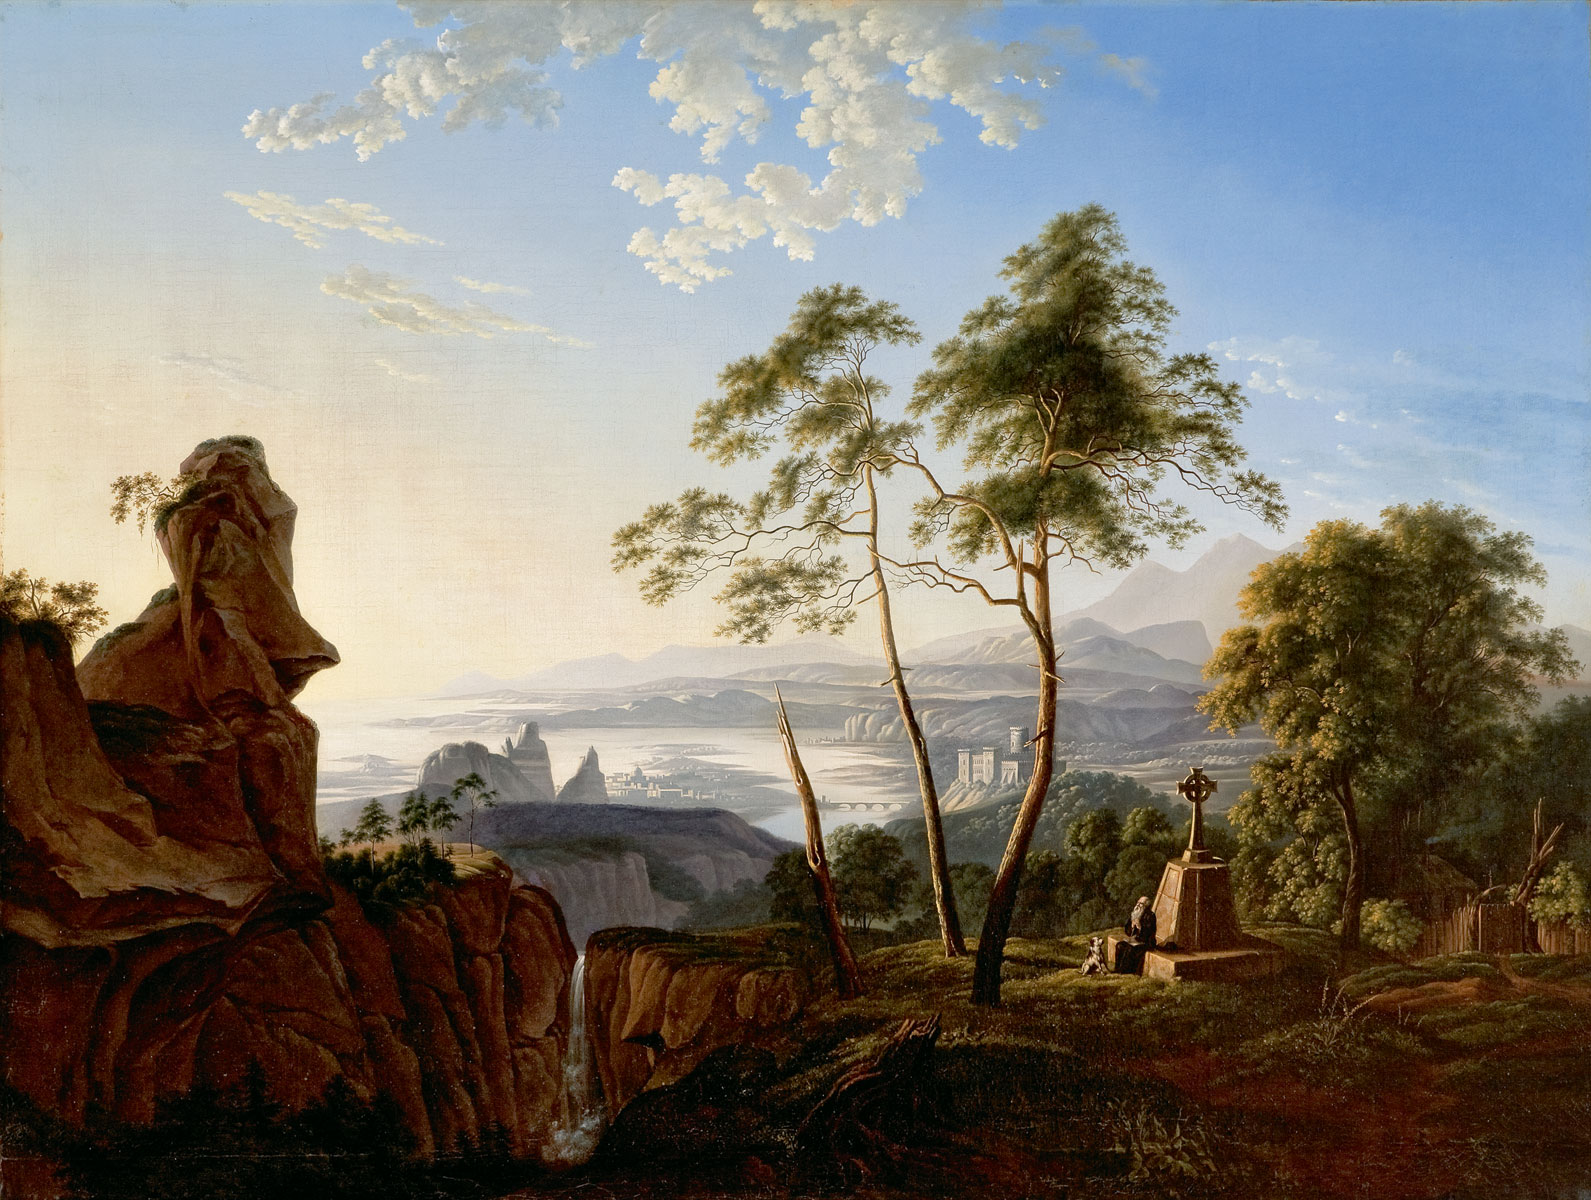 Carl Blechen (zugeschrieben), Landschaft mit Eremit, um 1822, Fürst-Pückler-Museum, Branitz